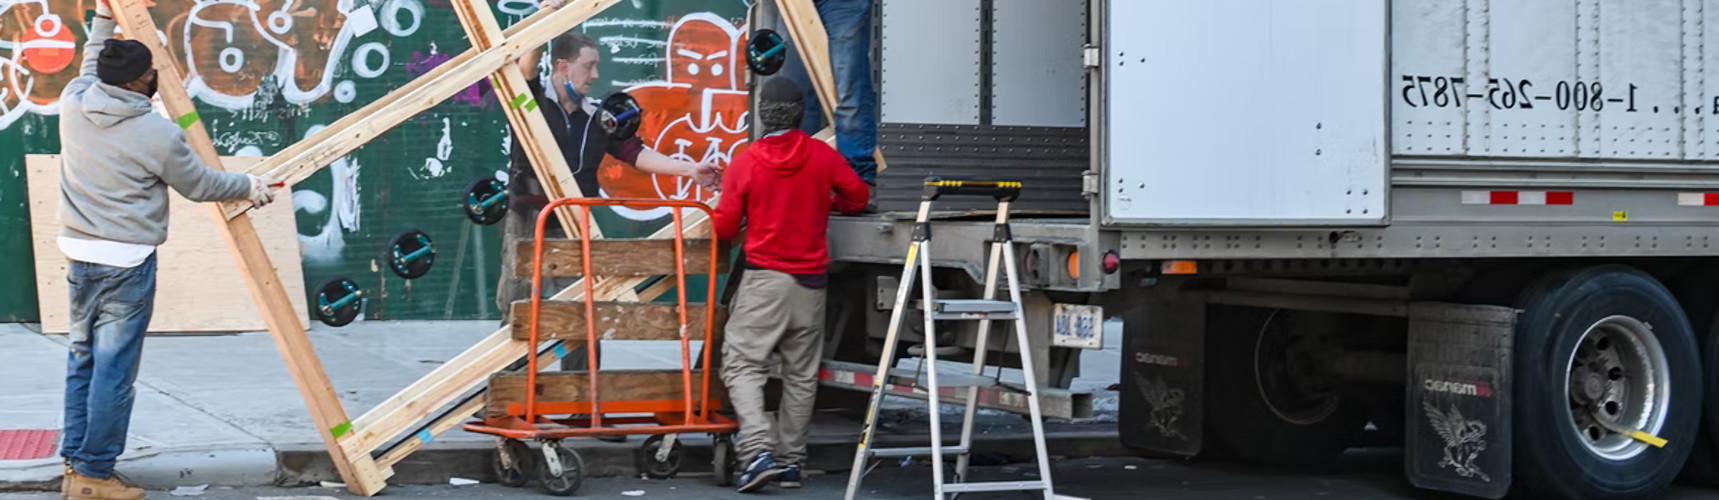 frete de retorno: vários ajudantes ajudam a carregar vidro em um caminhão